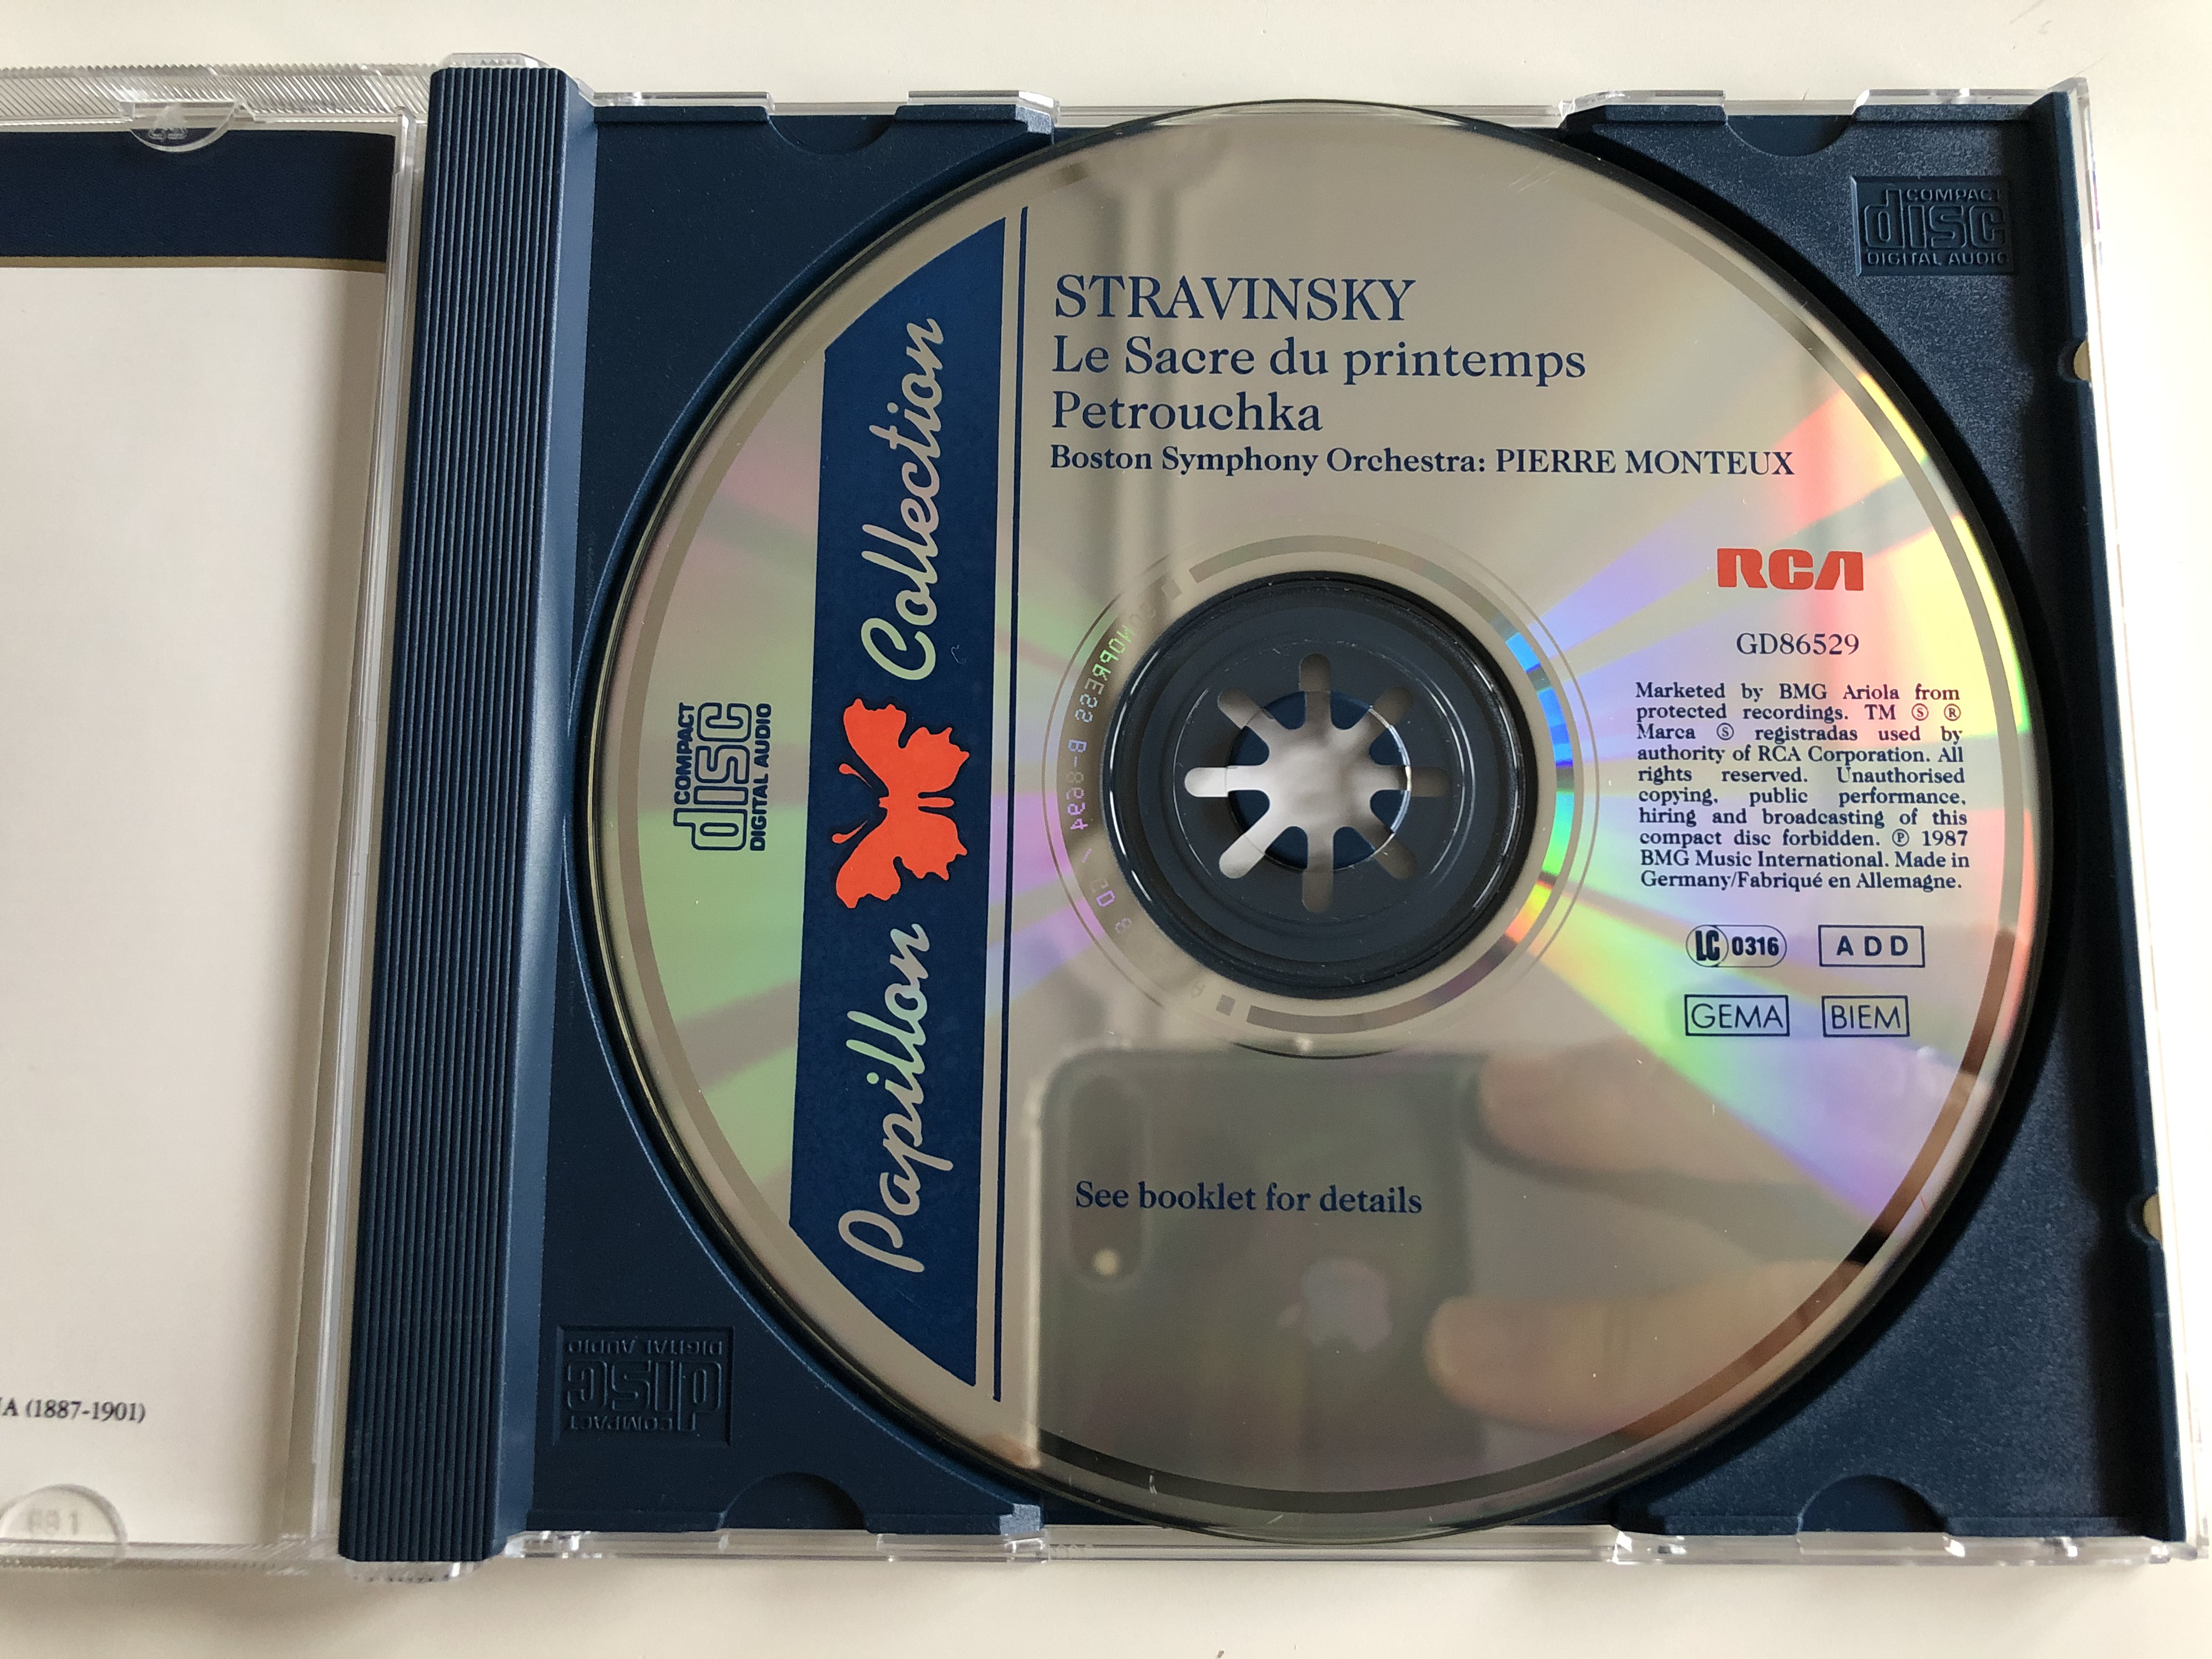 stravinsky-le-sacre-du-printemps-petrouchka-pierre-monteux-boston-symphony-orchestra-rca-audio-cd-1987-gd86529-4-.jpg